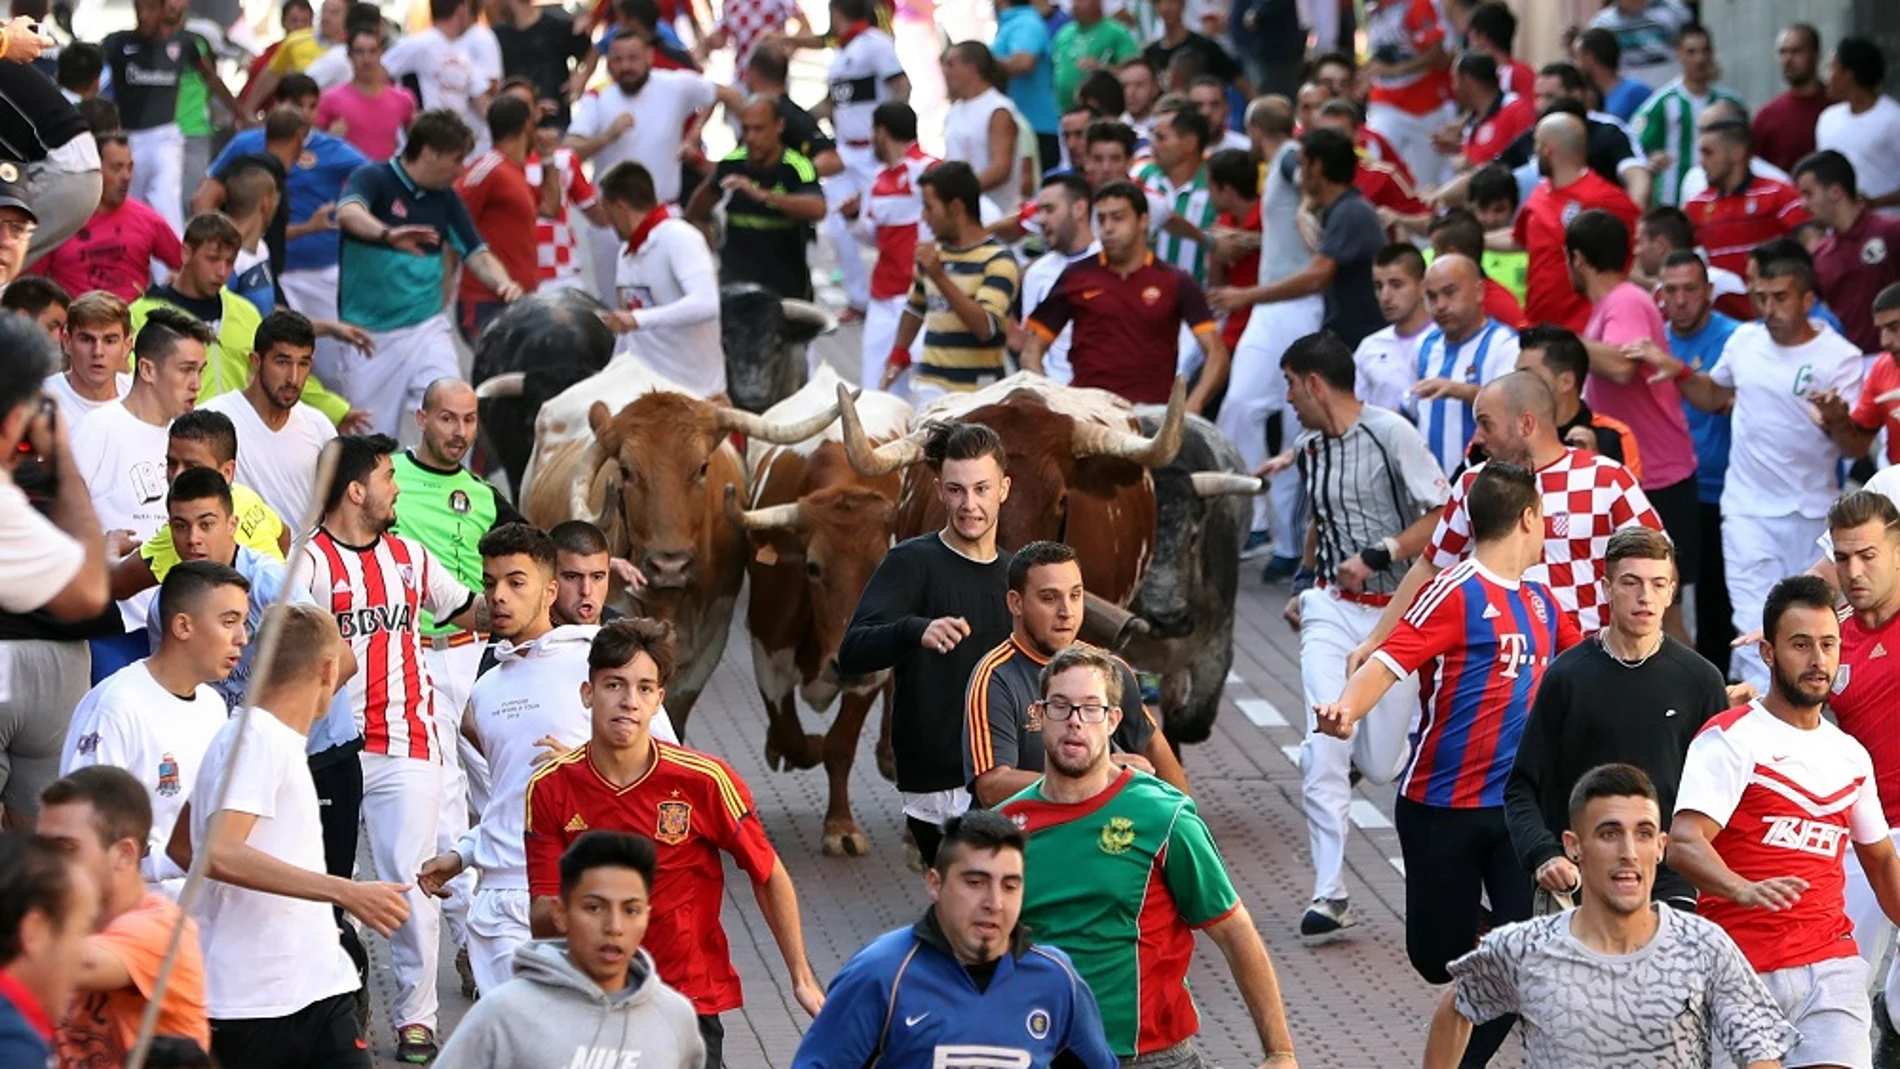 Los mozos corren delante de los toros, de la ganadería Peña de Francia, en el cuarto encierro de San Sebastián de los Reyes (Madrid) que tuvo lugar ayer.